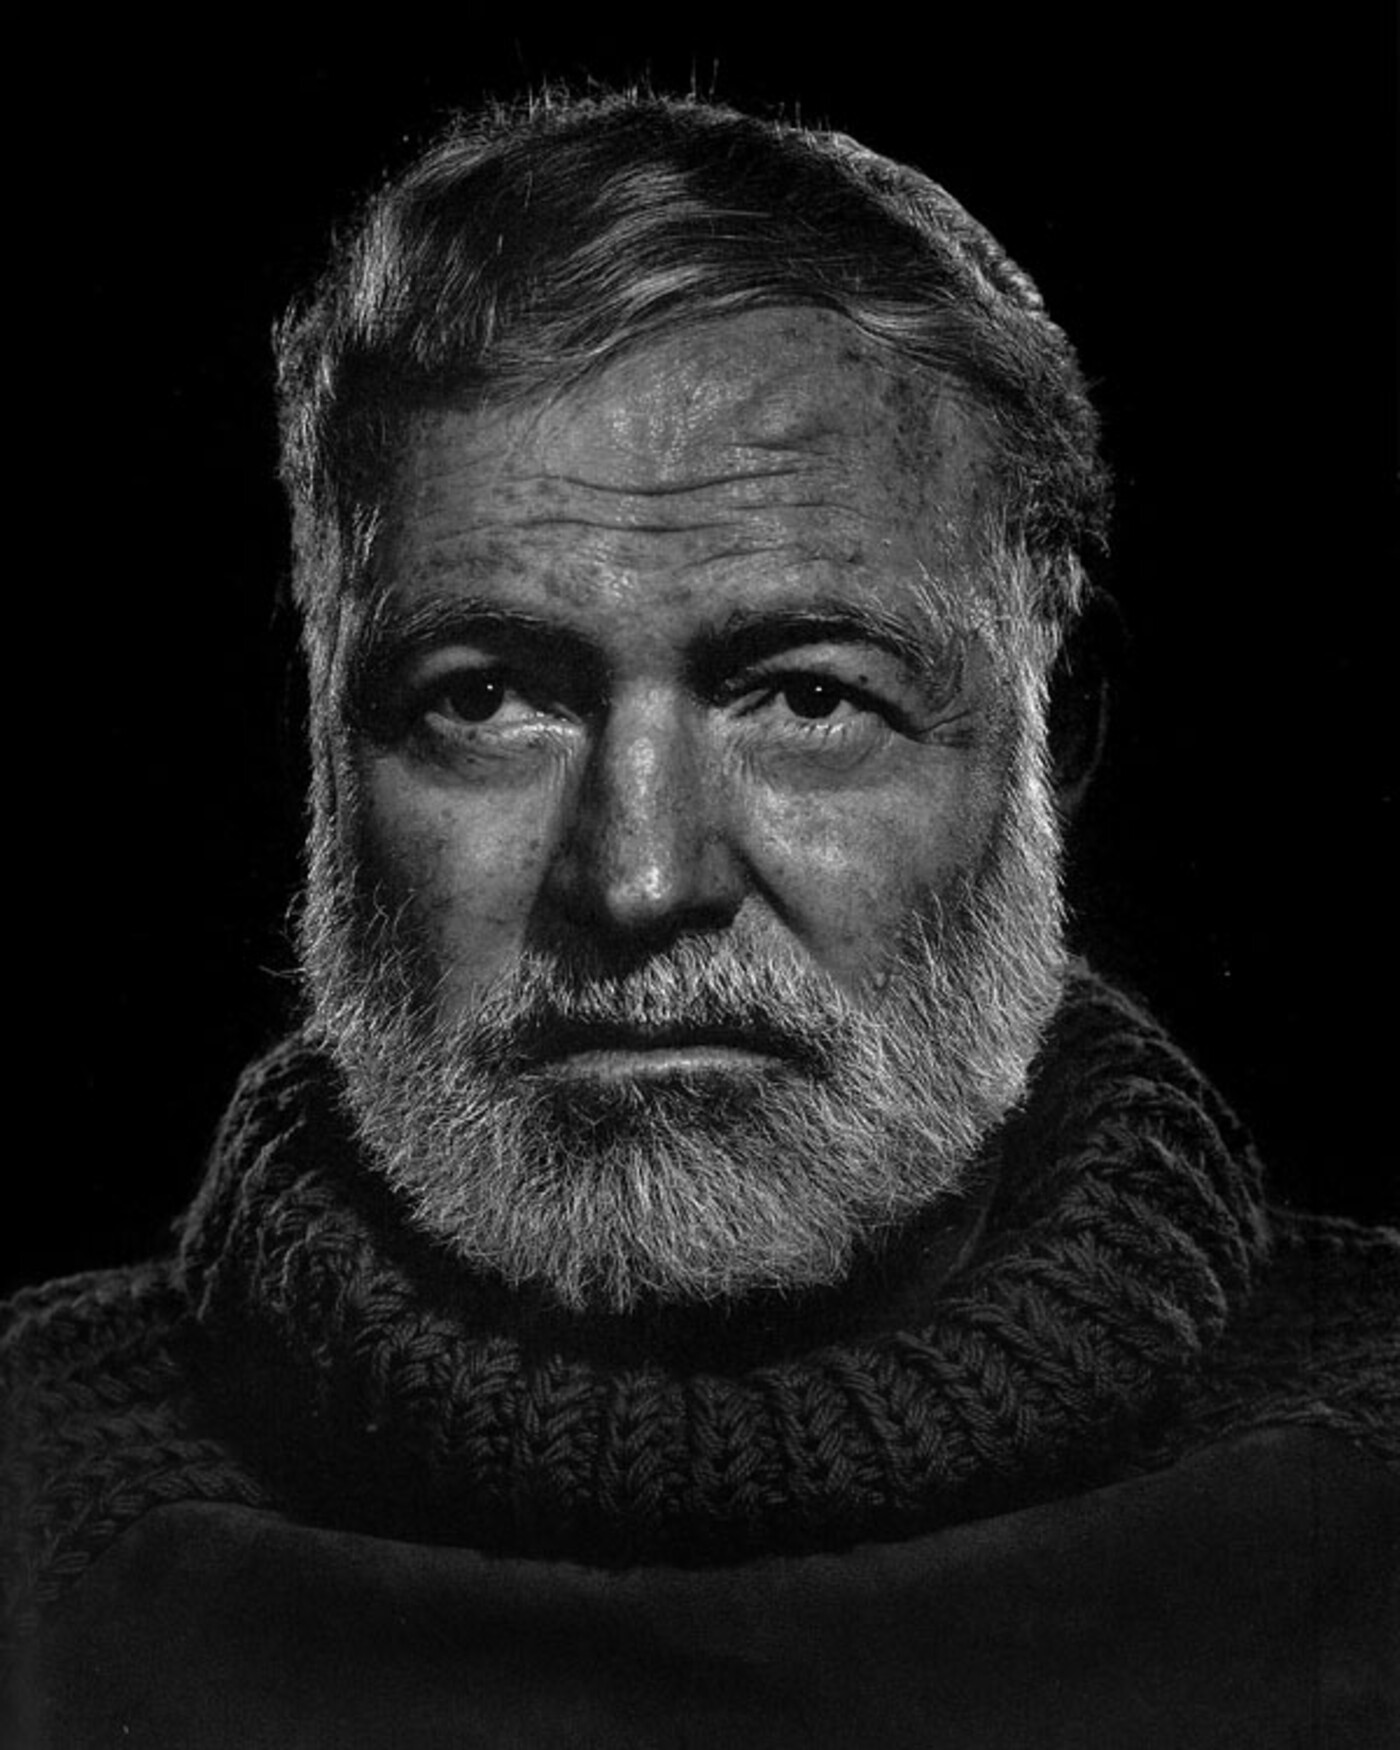 OVT 2014-09-28, 11.23 Het Spoor Terug, Ernest Hemingway, Mannen met baarden